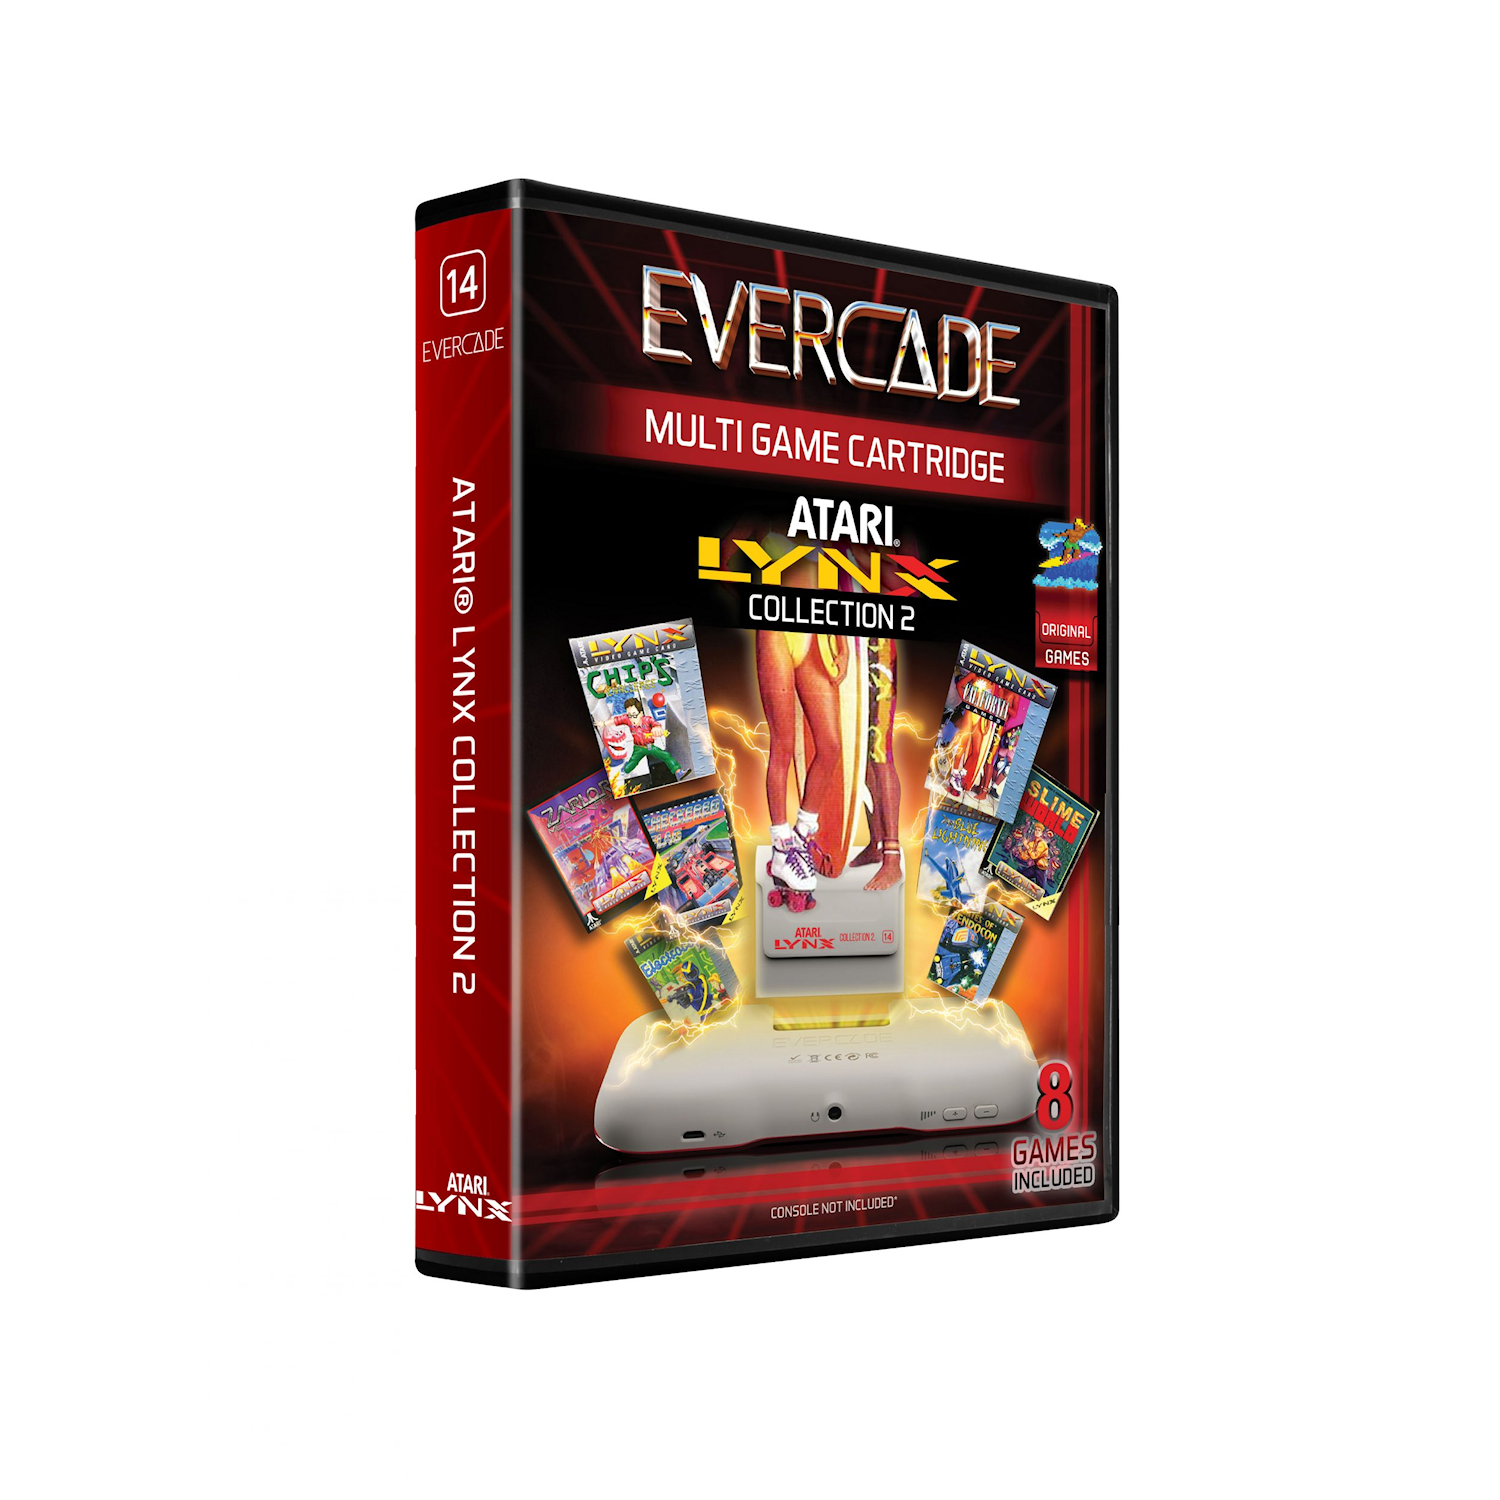 Evercade Atari Lynx Collection #2